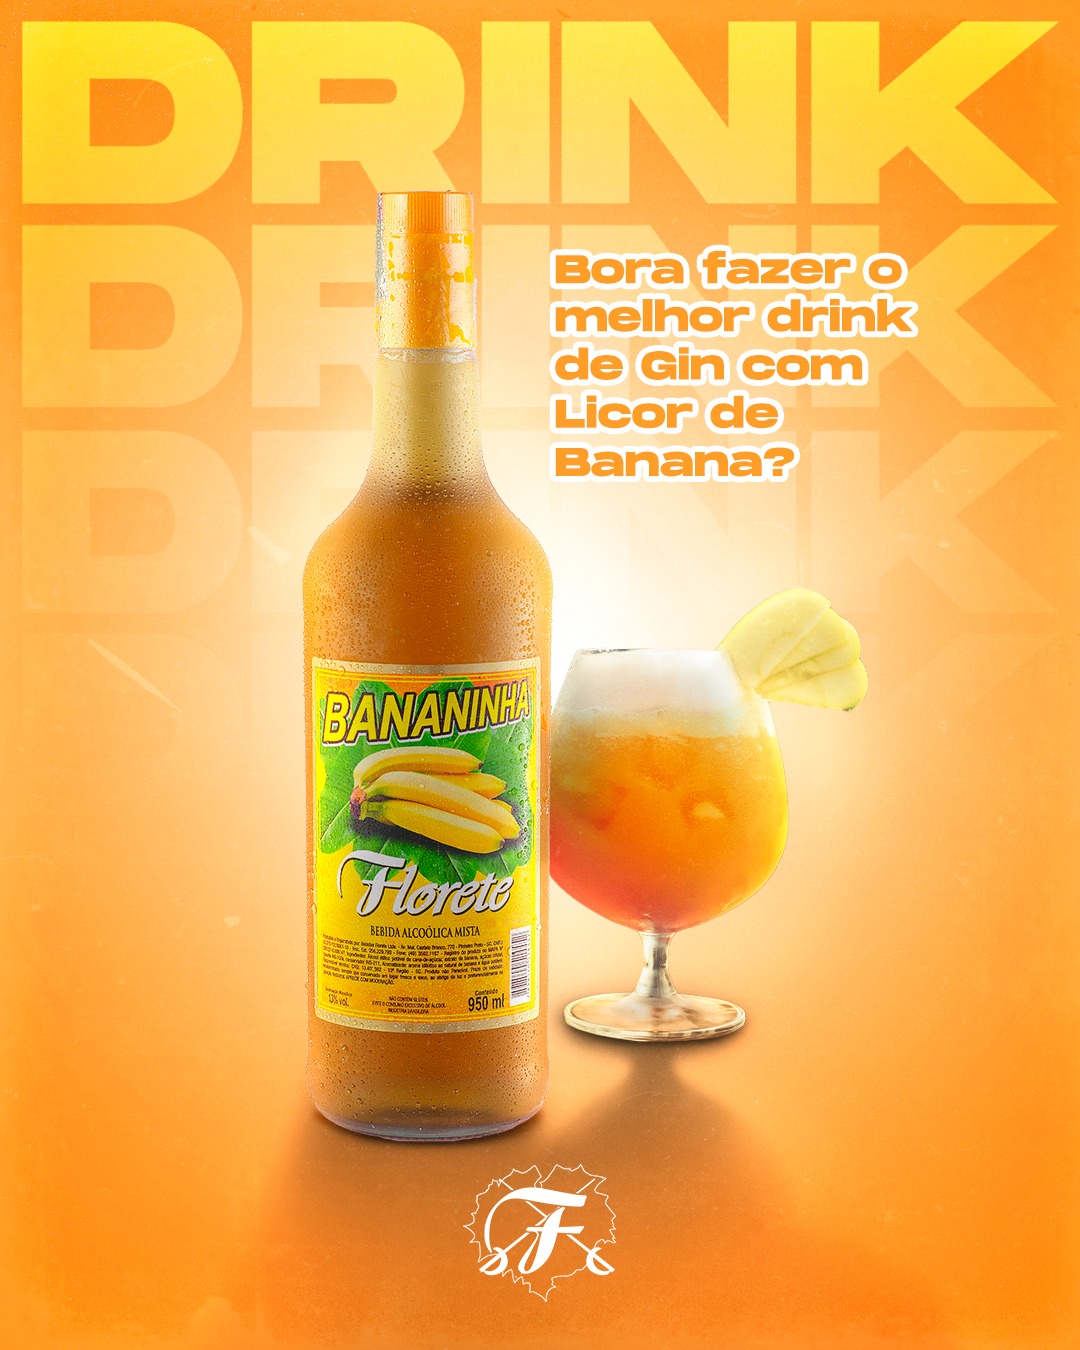 Bebidas Florete Bora fazer o melhor drink de Gin com Licor de Banana?